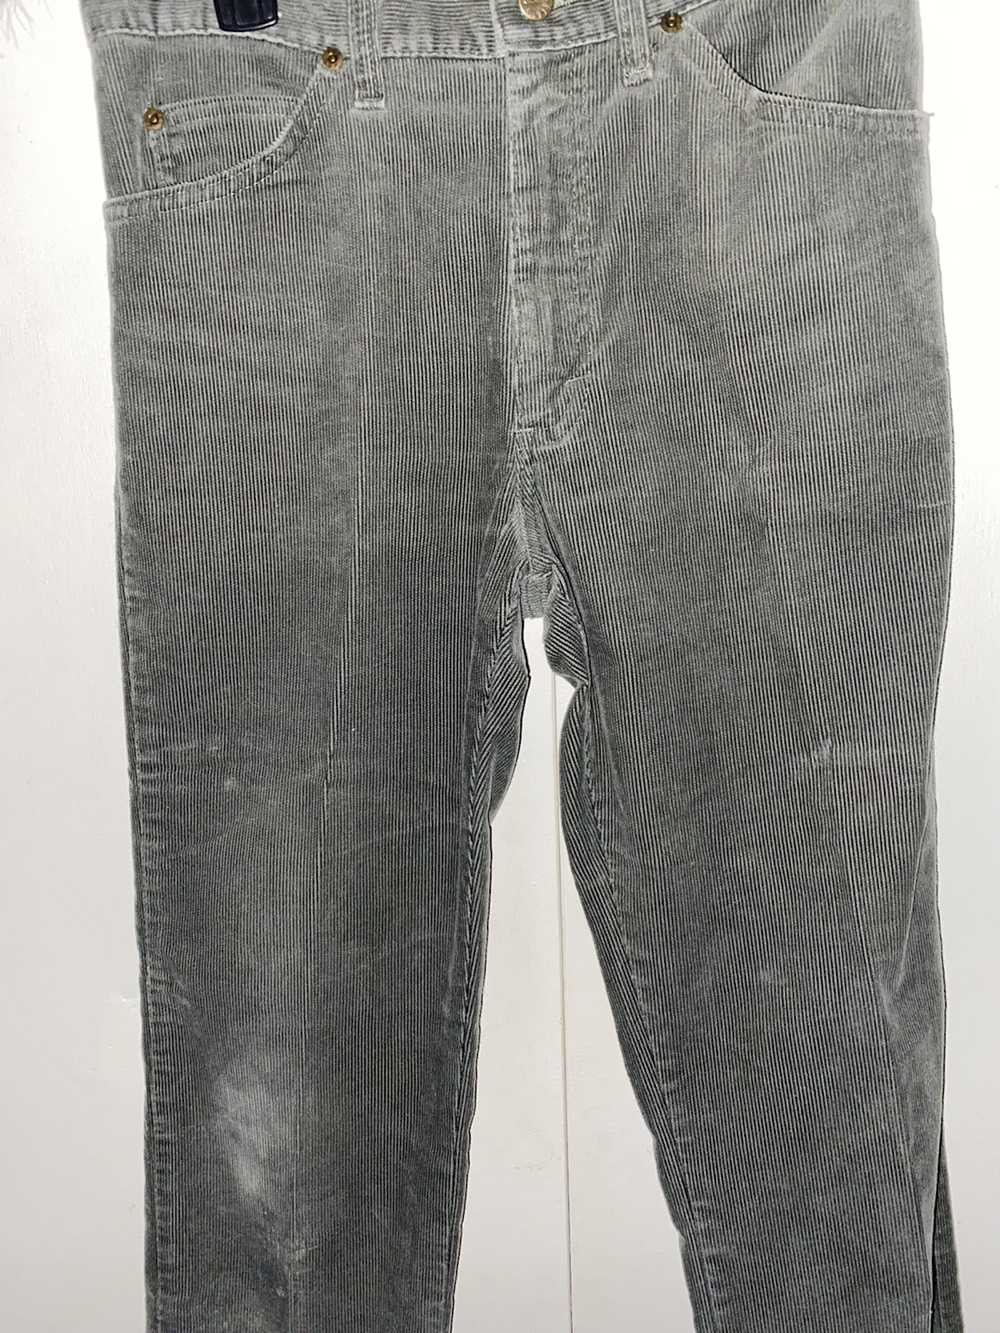 Lee Lee Men’s Vintage Corduroy Pants - image 1